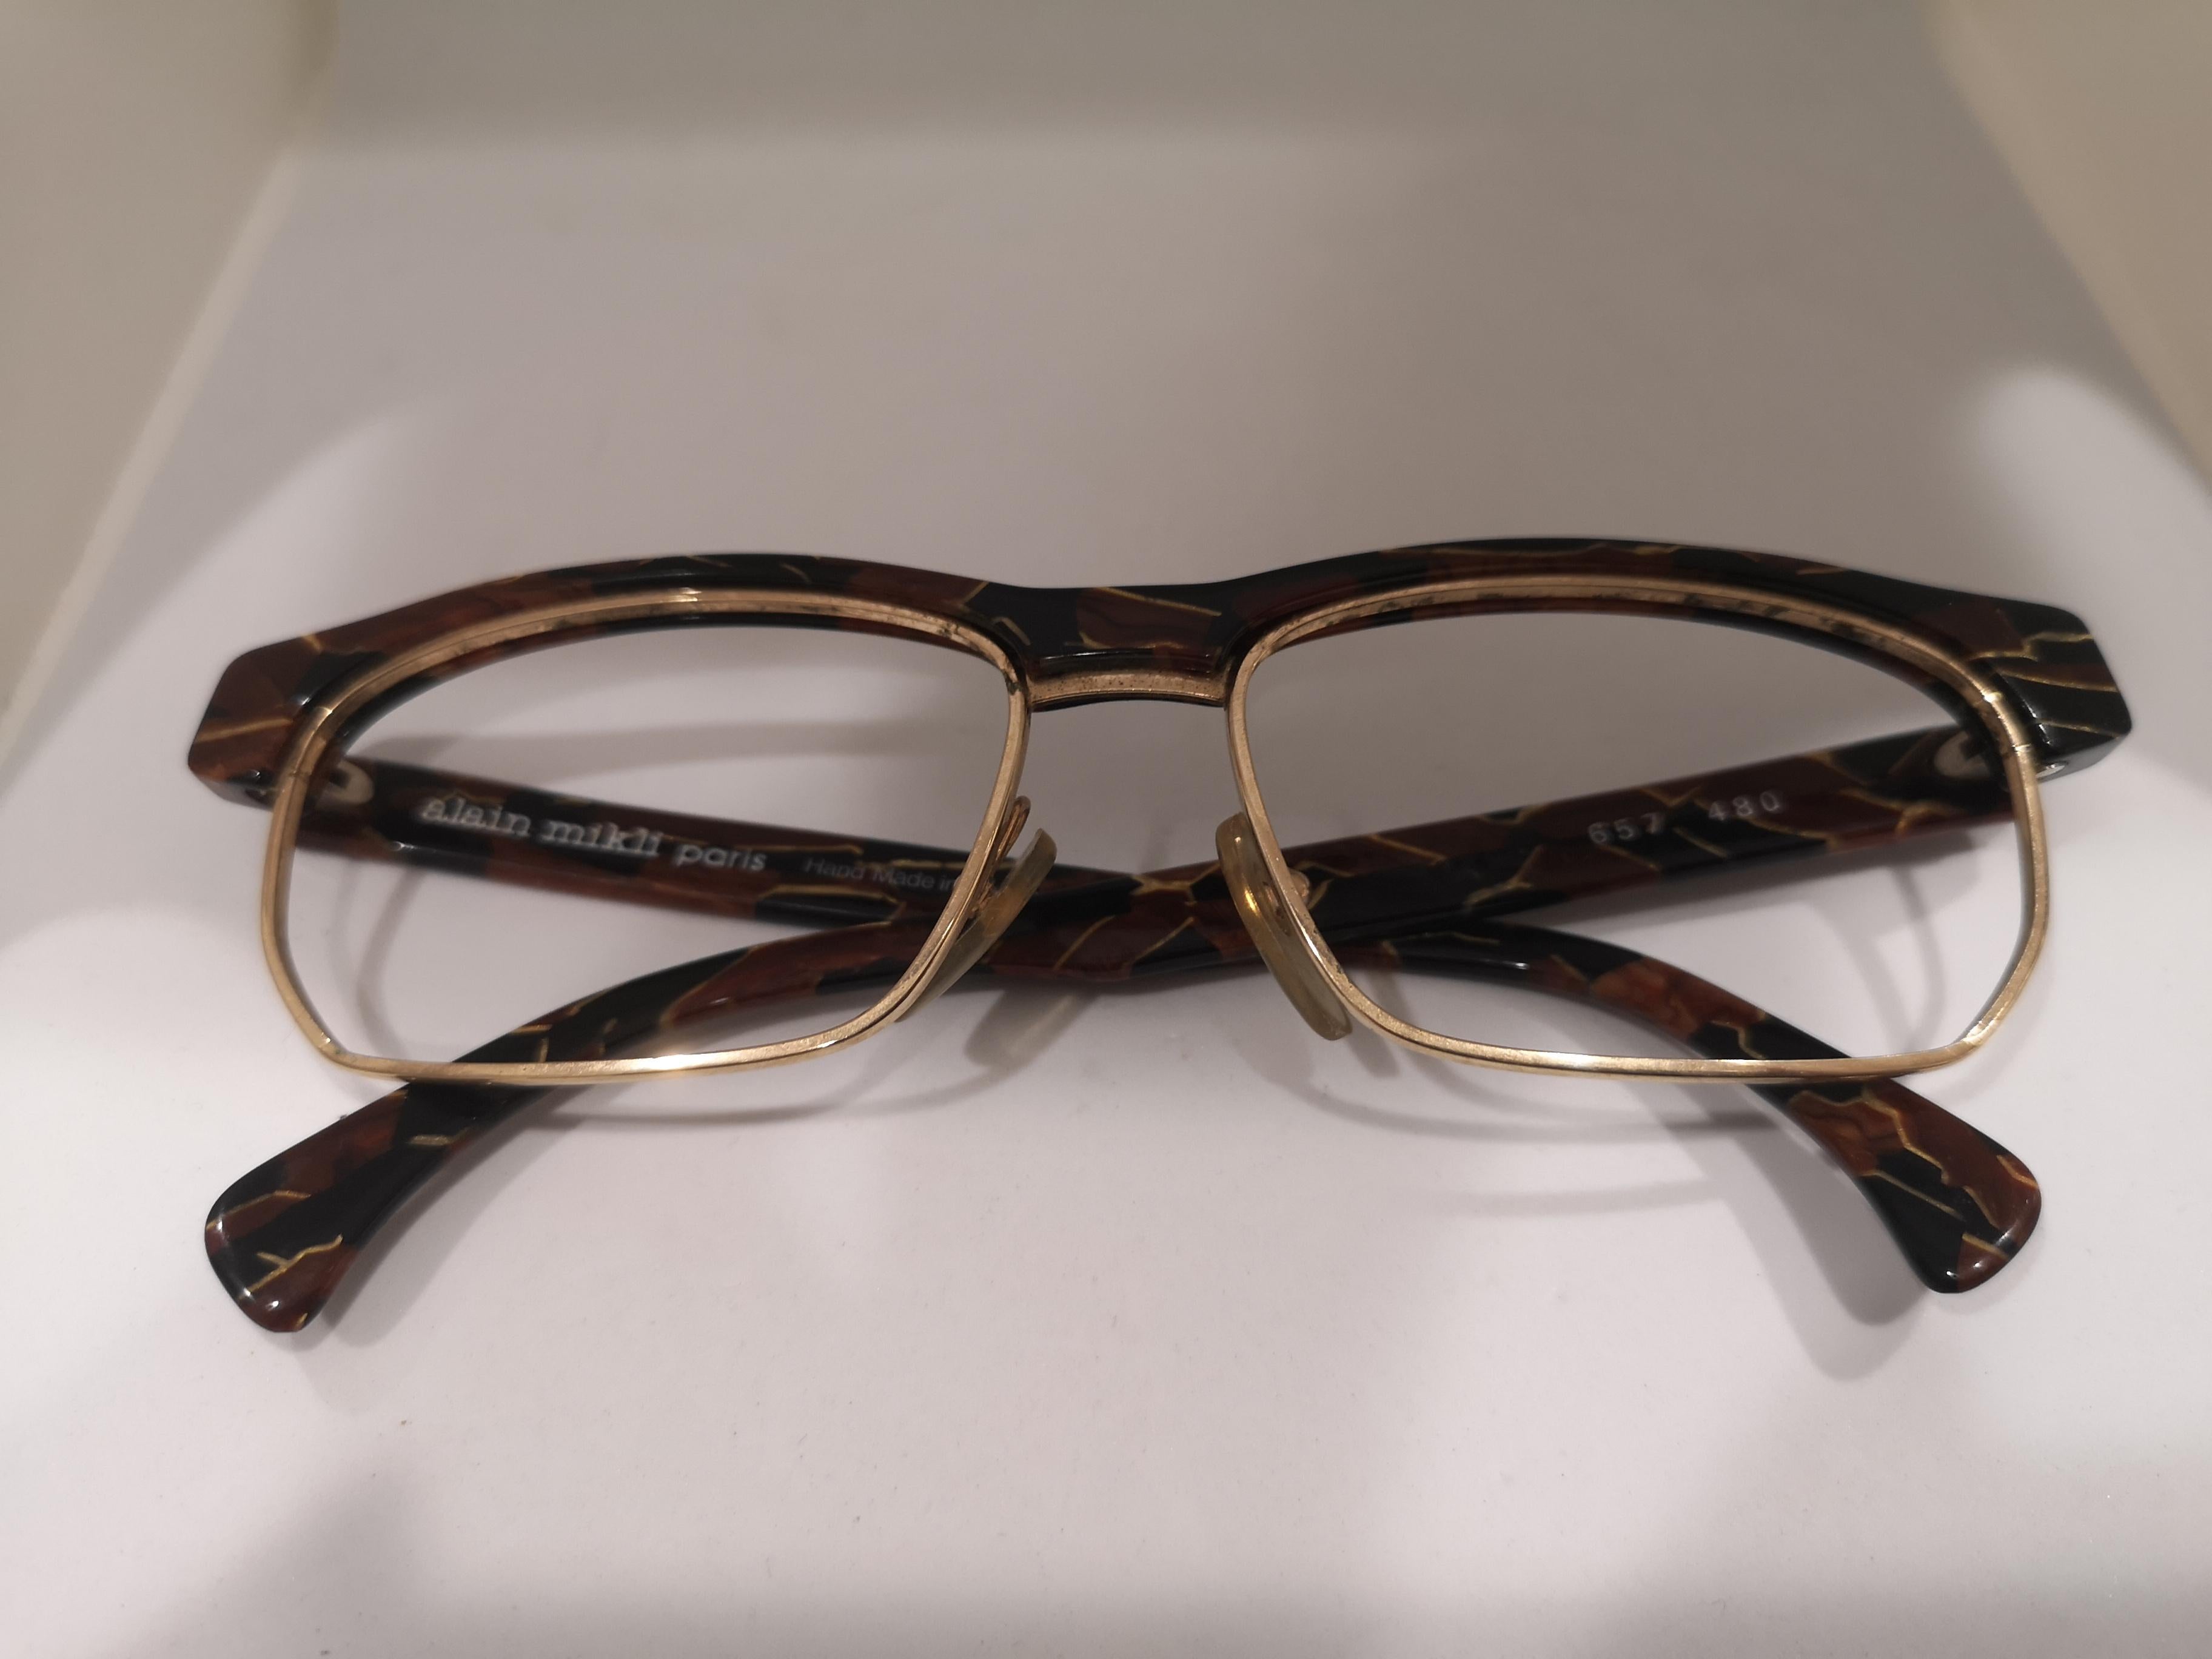 Alain Mikli tortoise gold frames
no glasses